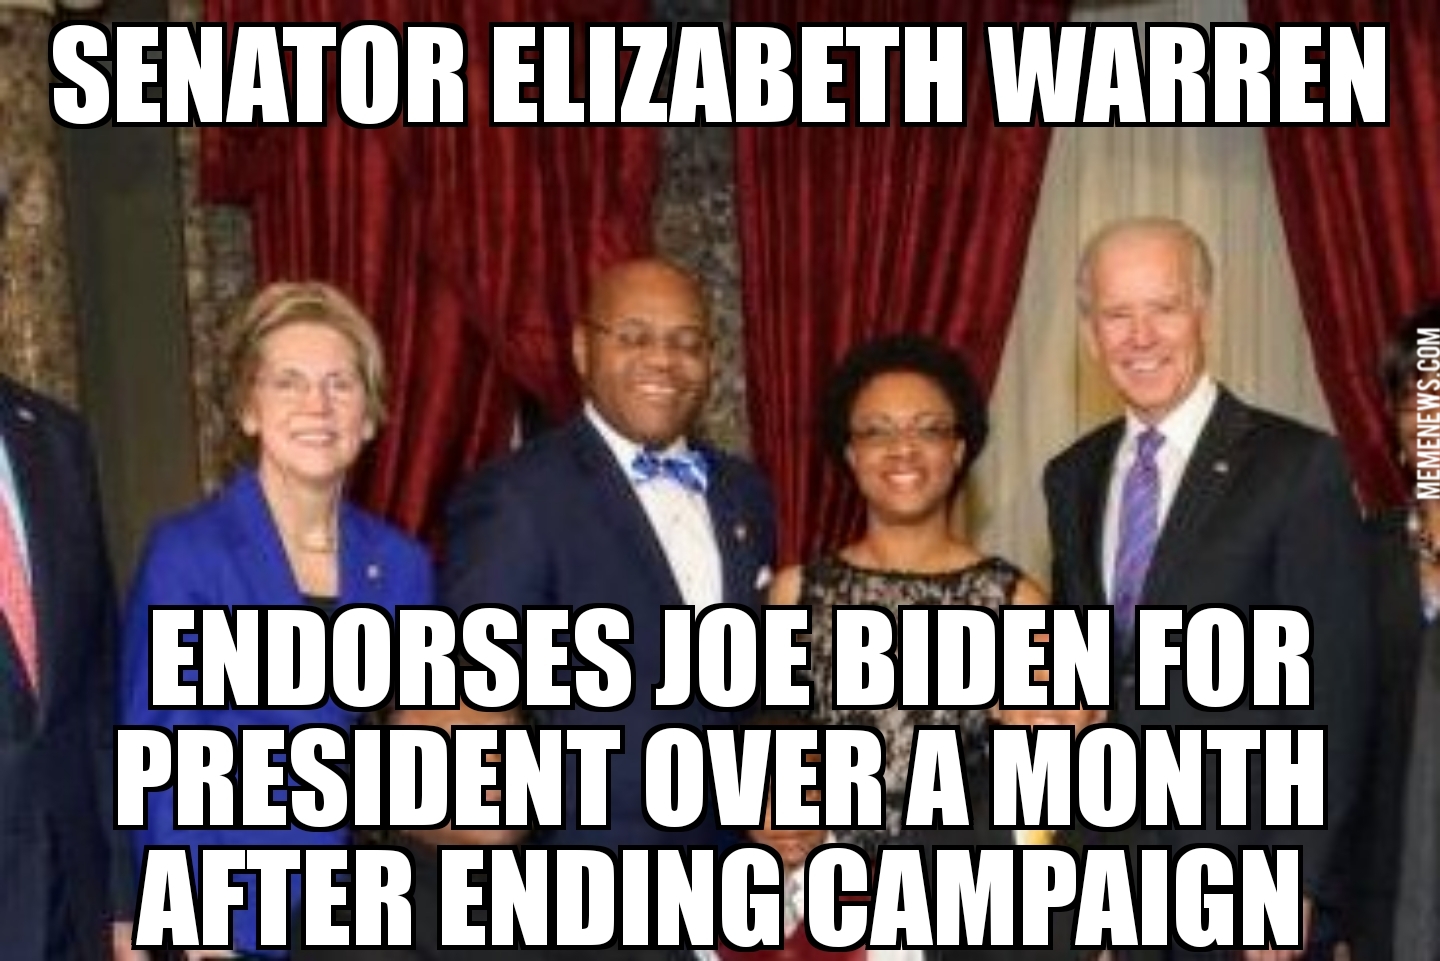 Elizabeth Warren endorses Joe Biden